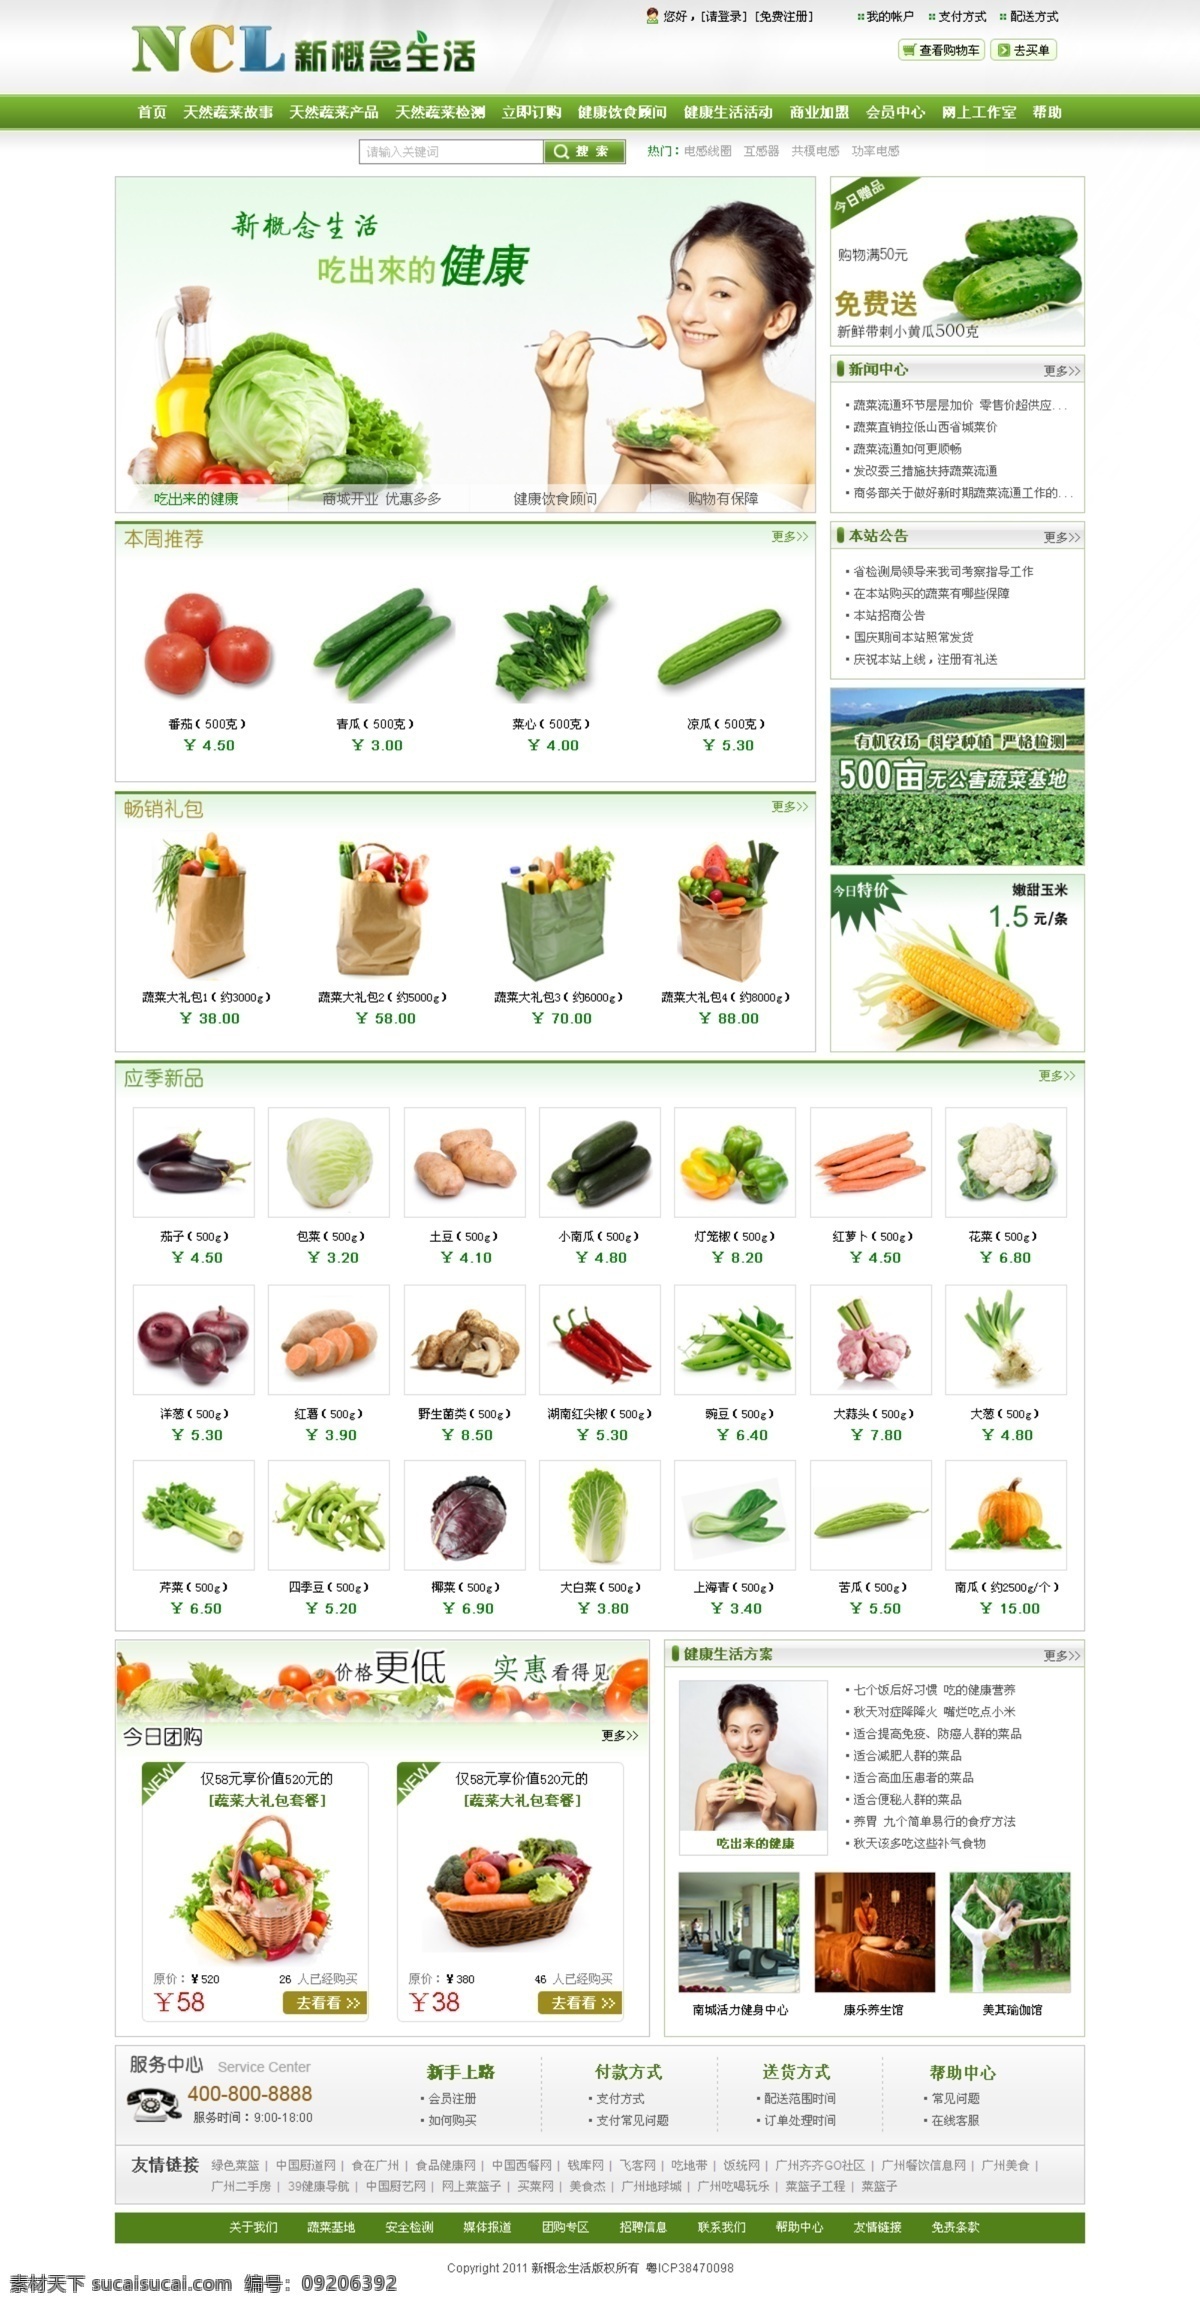 绿色 健康食品 商城 食品 食品超市 蔬菜 水果 网站设计 网络商城 绿色食品商城 原创设计 原创网页设计